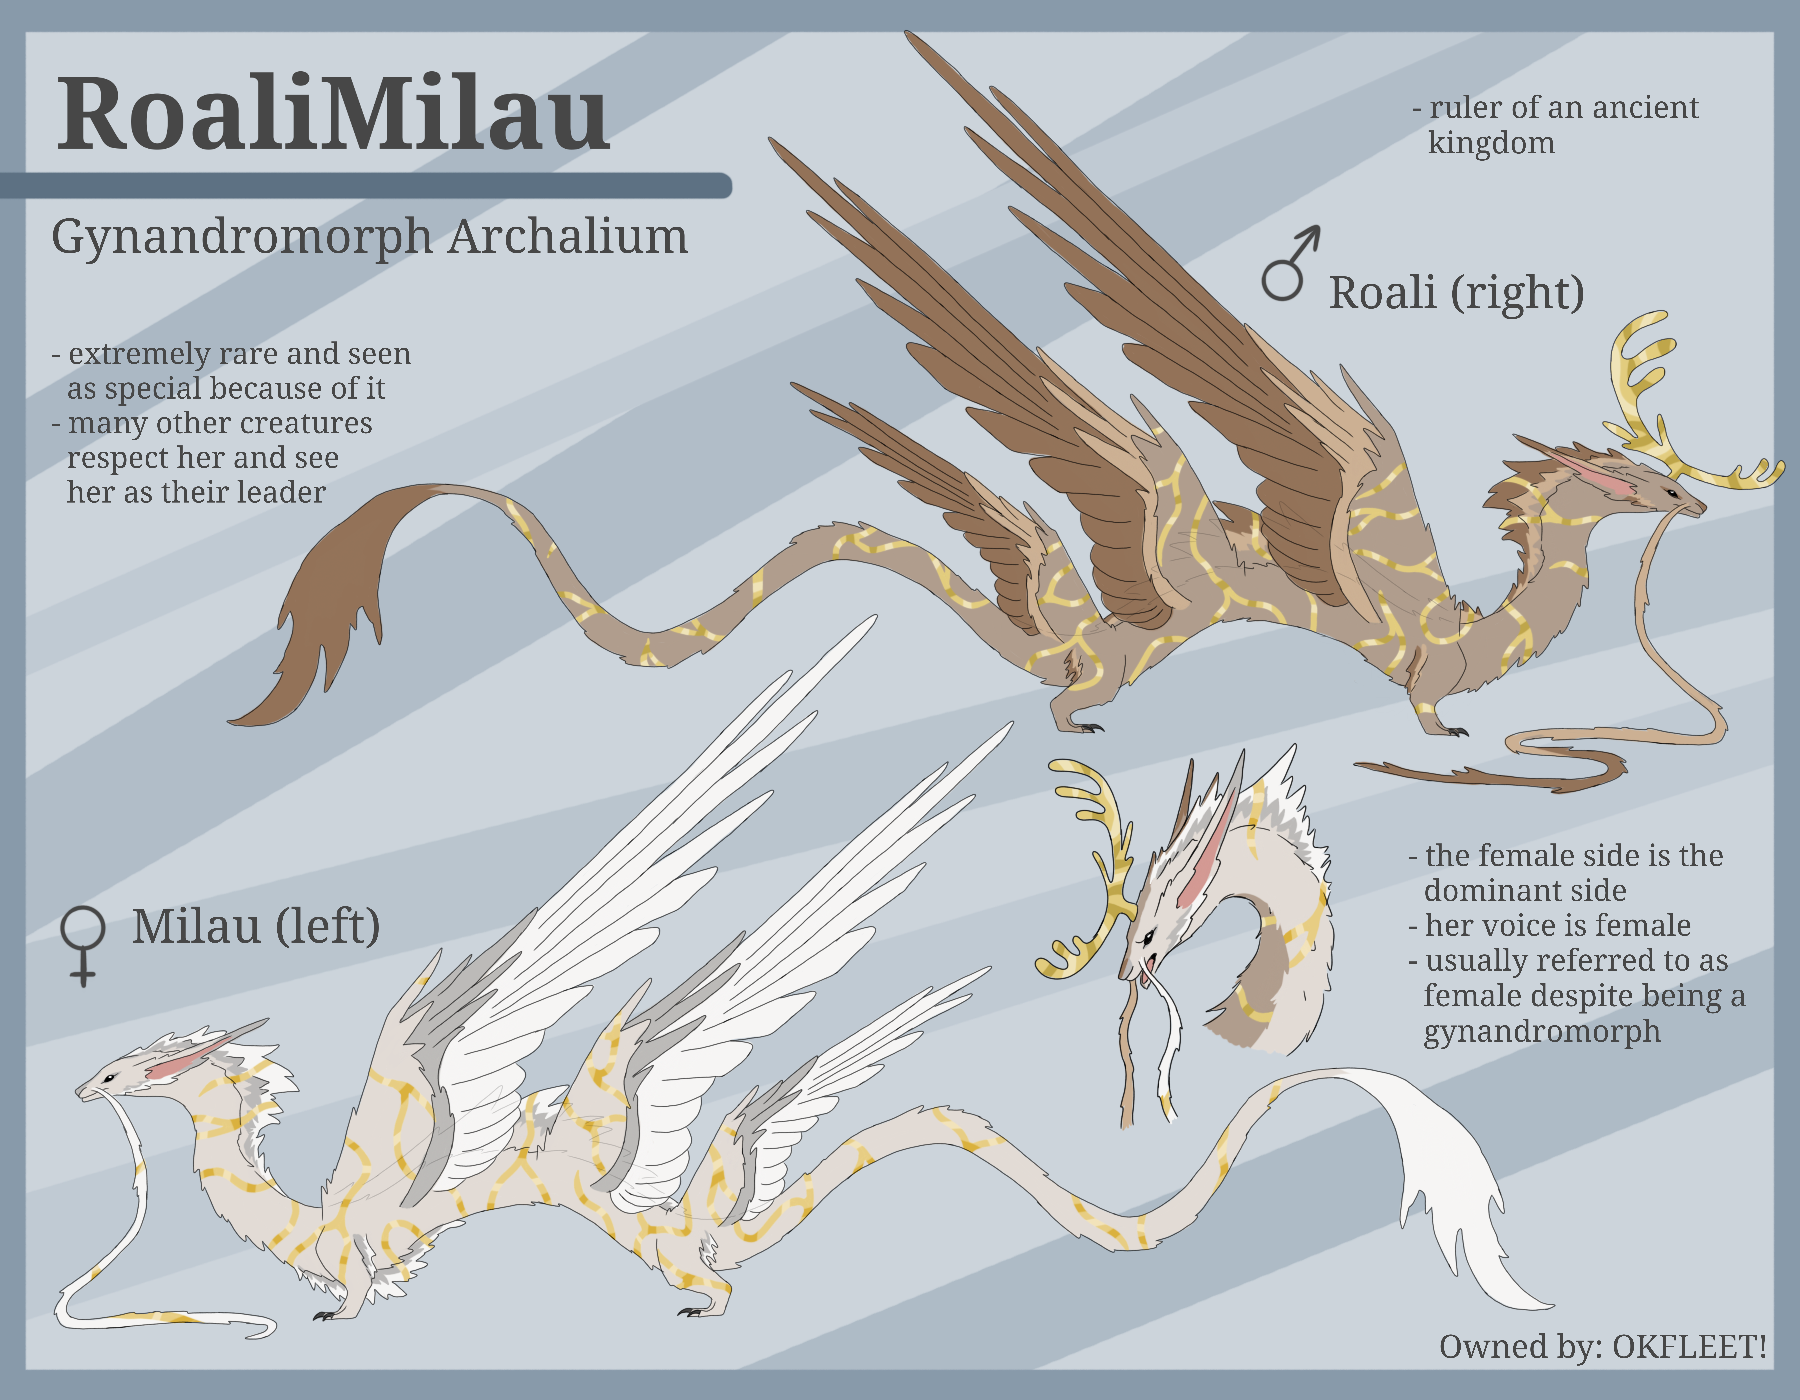 RoaliMilau, the gynandromorph archalium